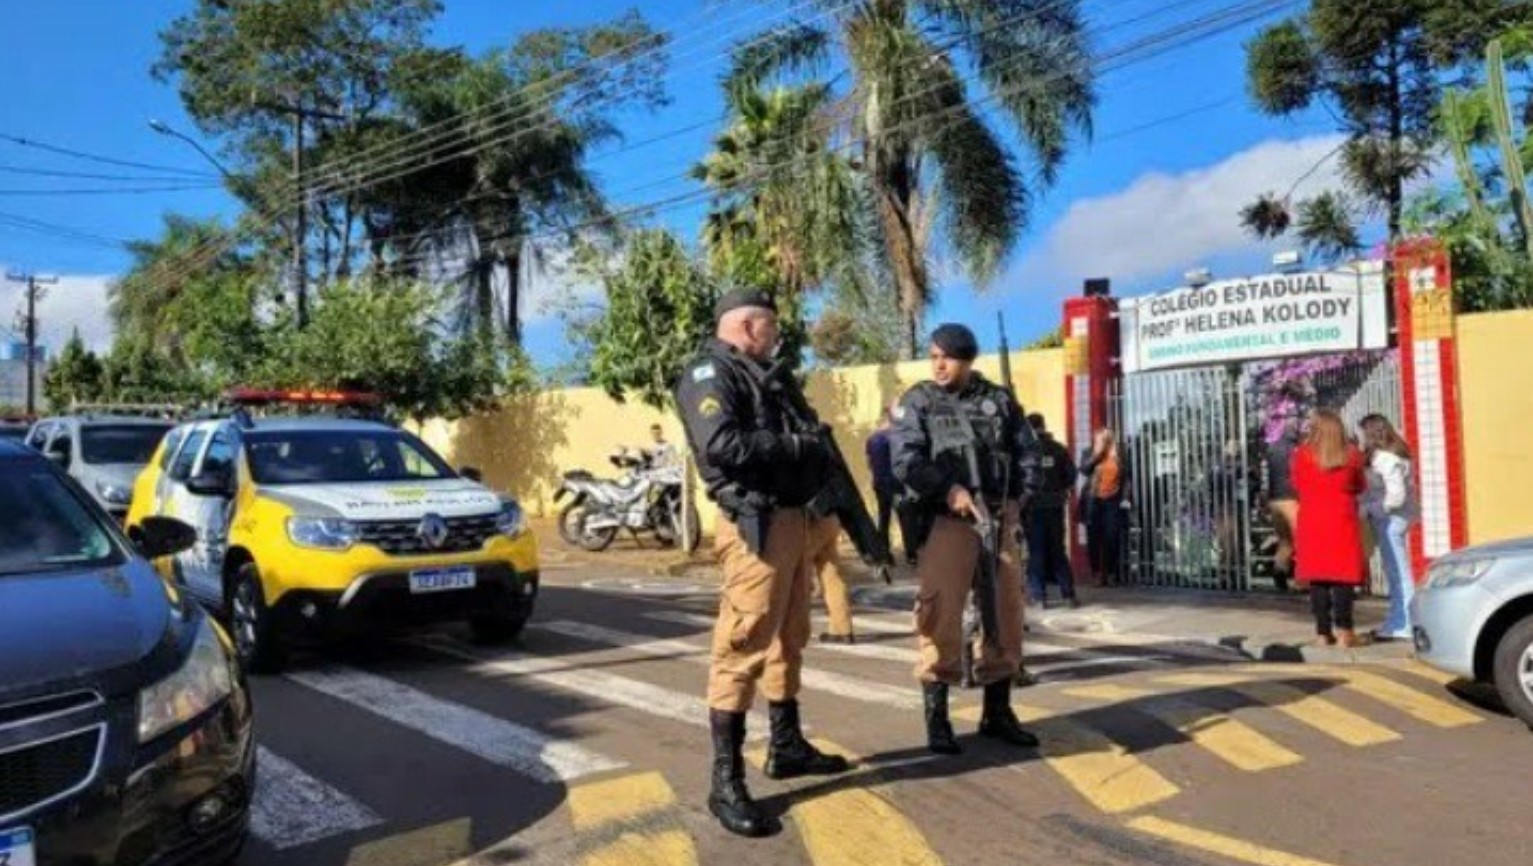 No dia 21, uma notícia chocante abalou o estado no Paraná, quando o autor do terrível ataque a uma escola foi encontrado morto em sua cela. FOTO: internet.